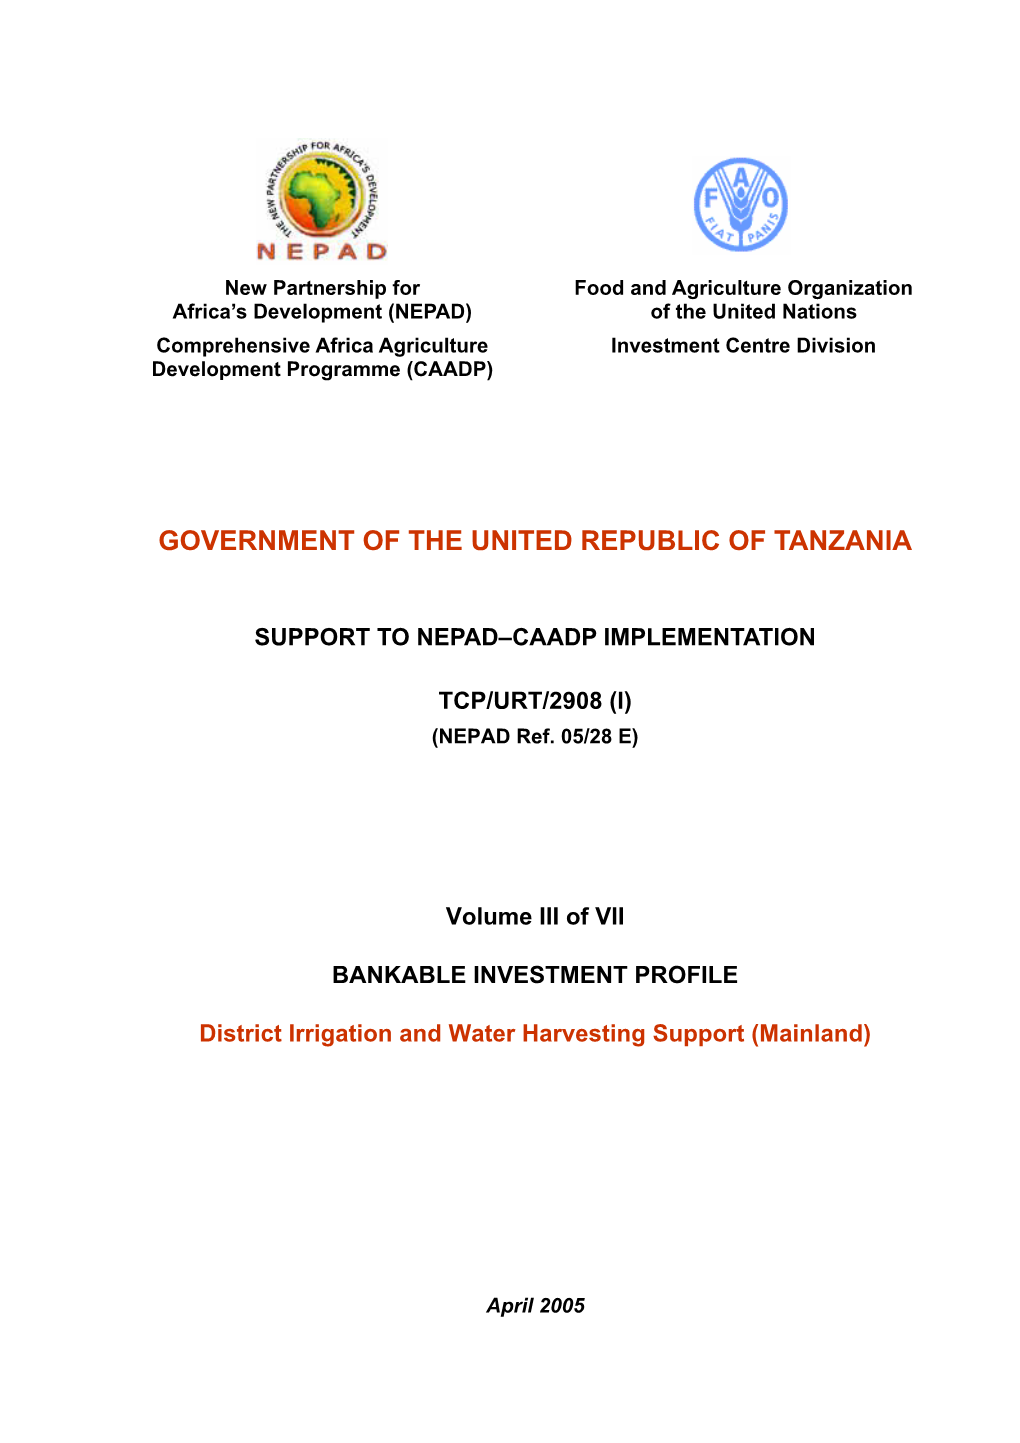 Government of the United Republic of Tanzania